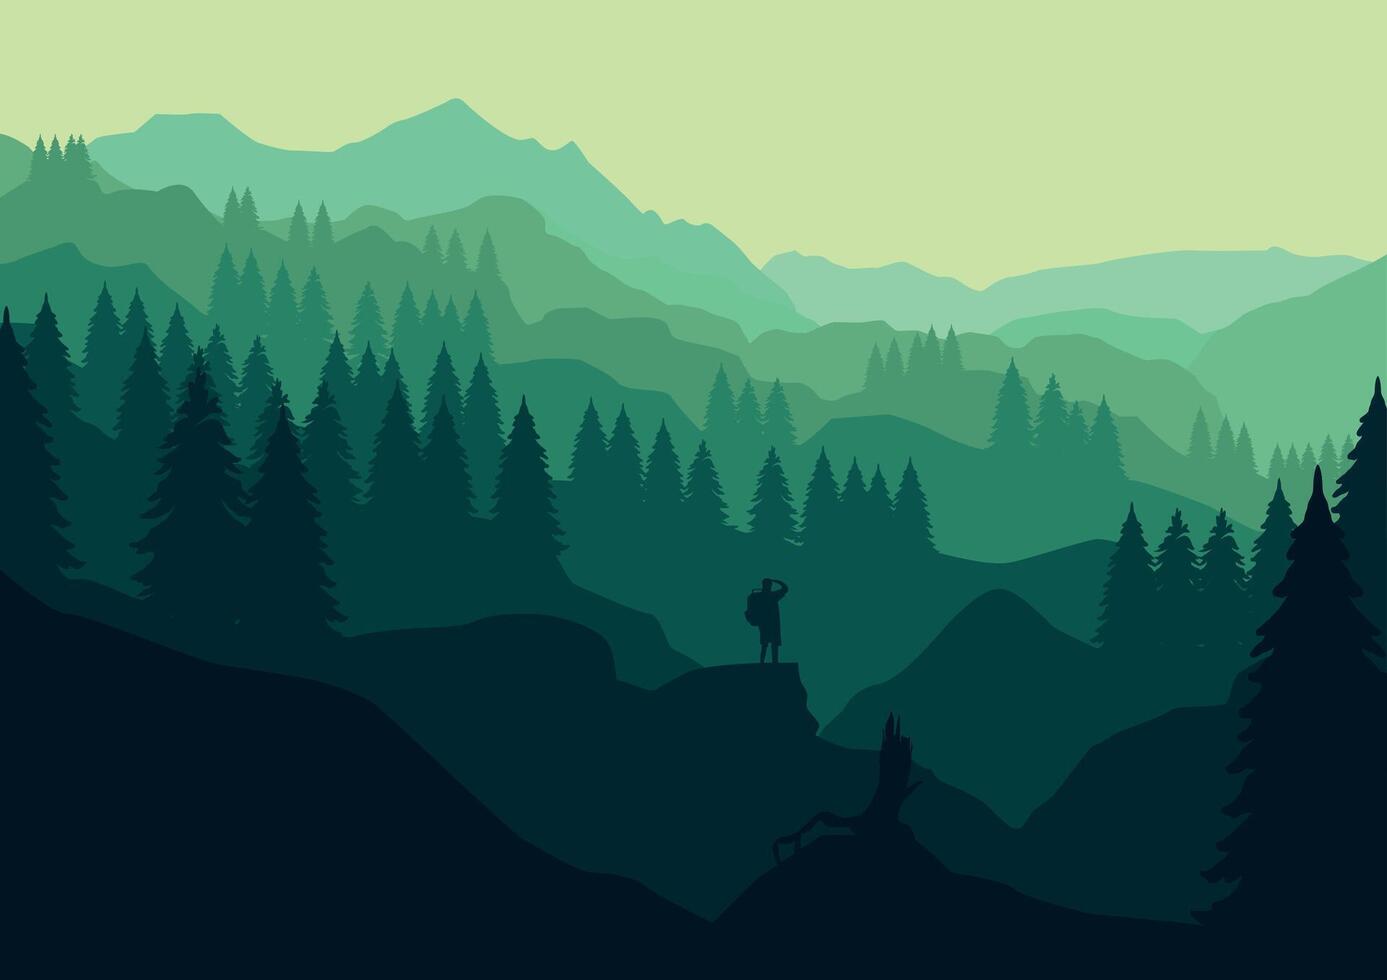 montanhas e pinho floresta panorama panorama. ilustração dentro plano estilo. vetor